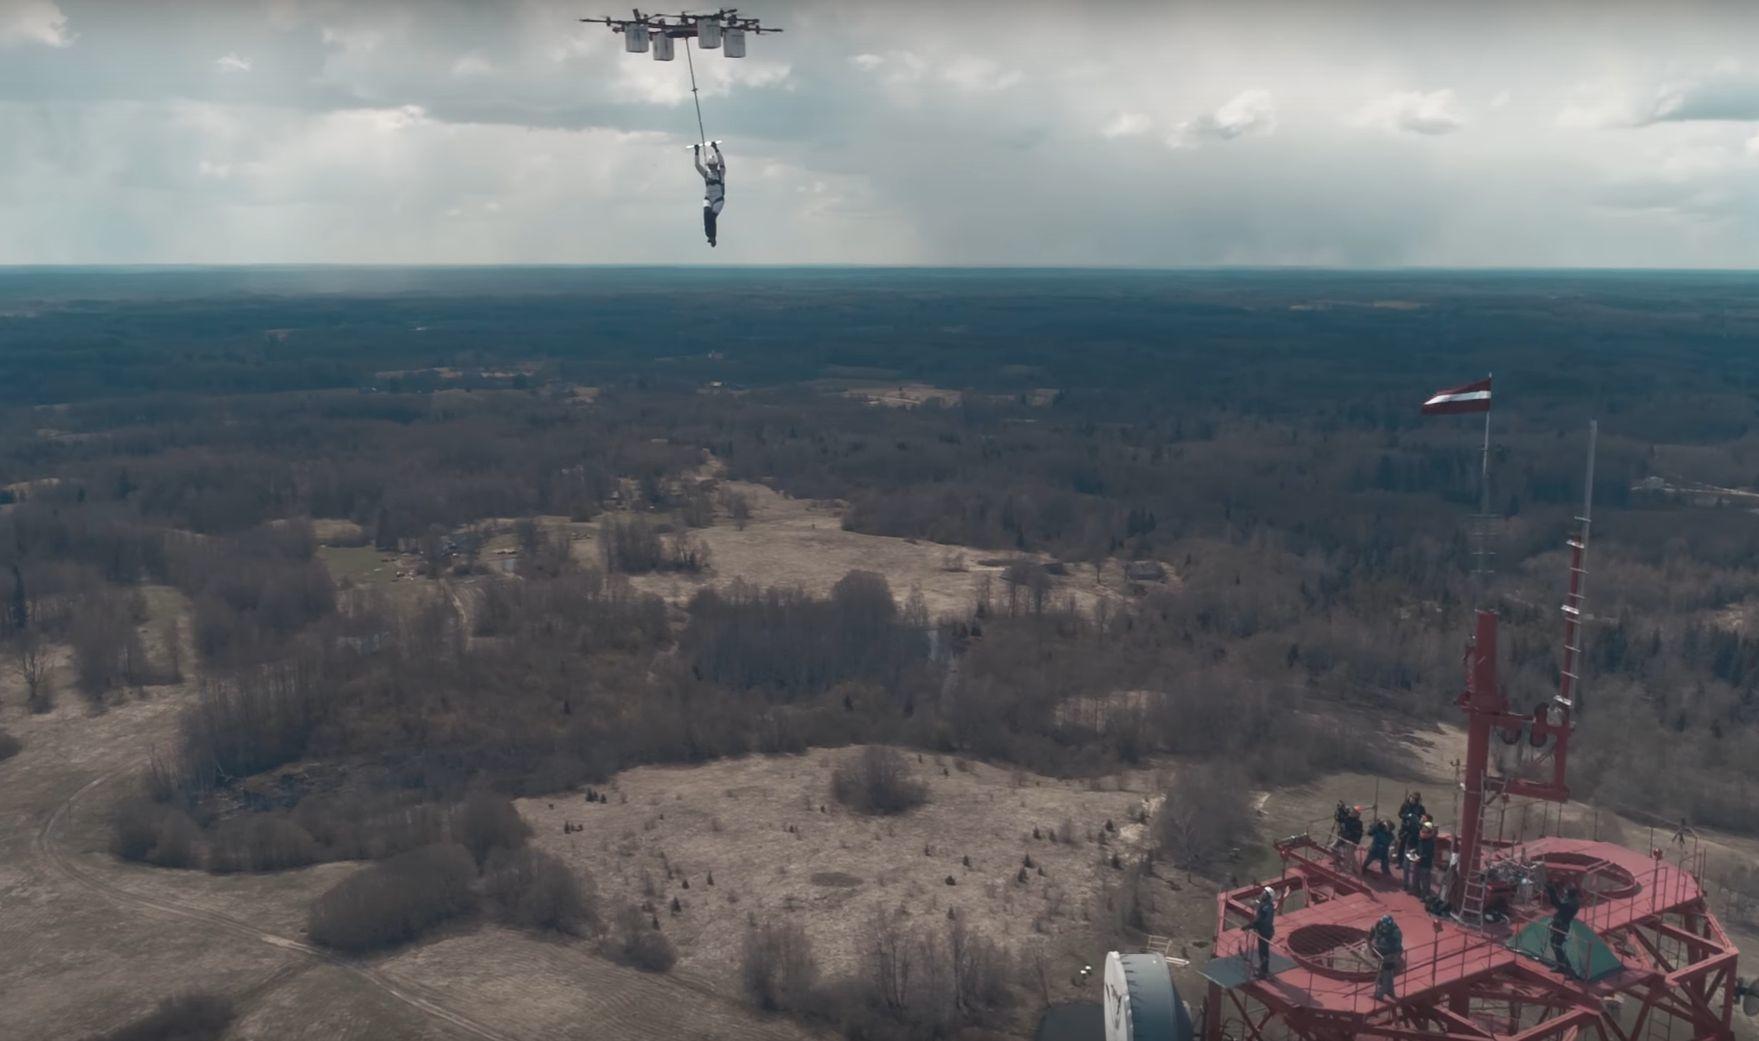 Dronen løftet fallskjermhopperen opp til en høyde på 330 meter.